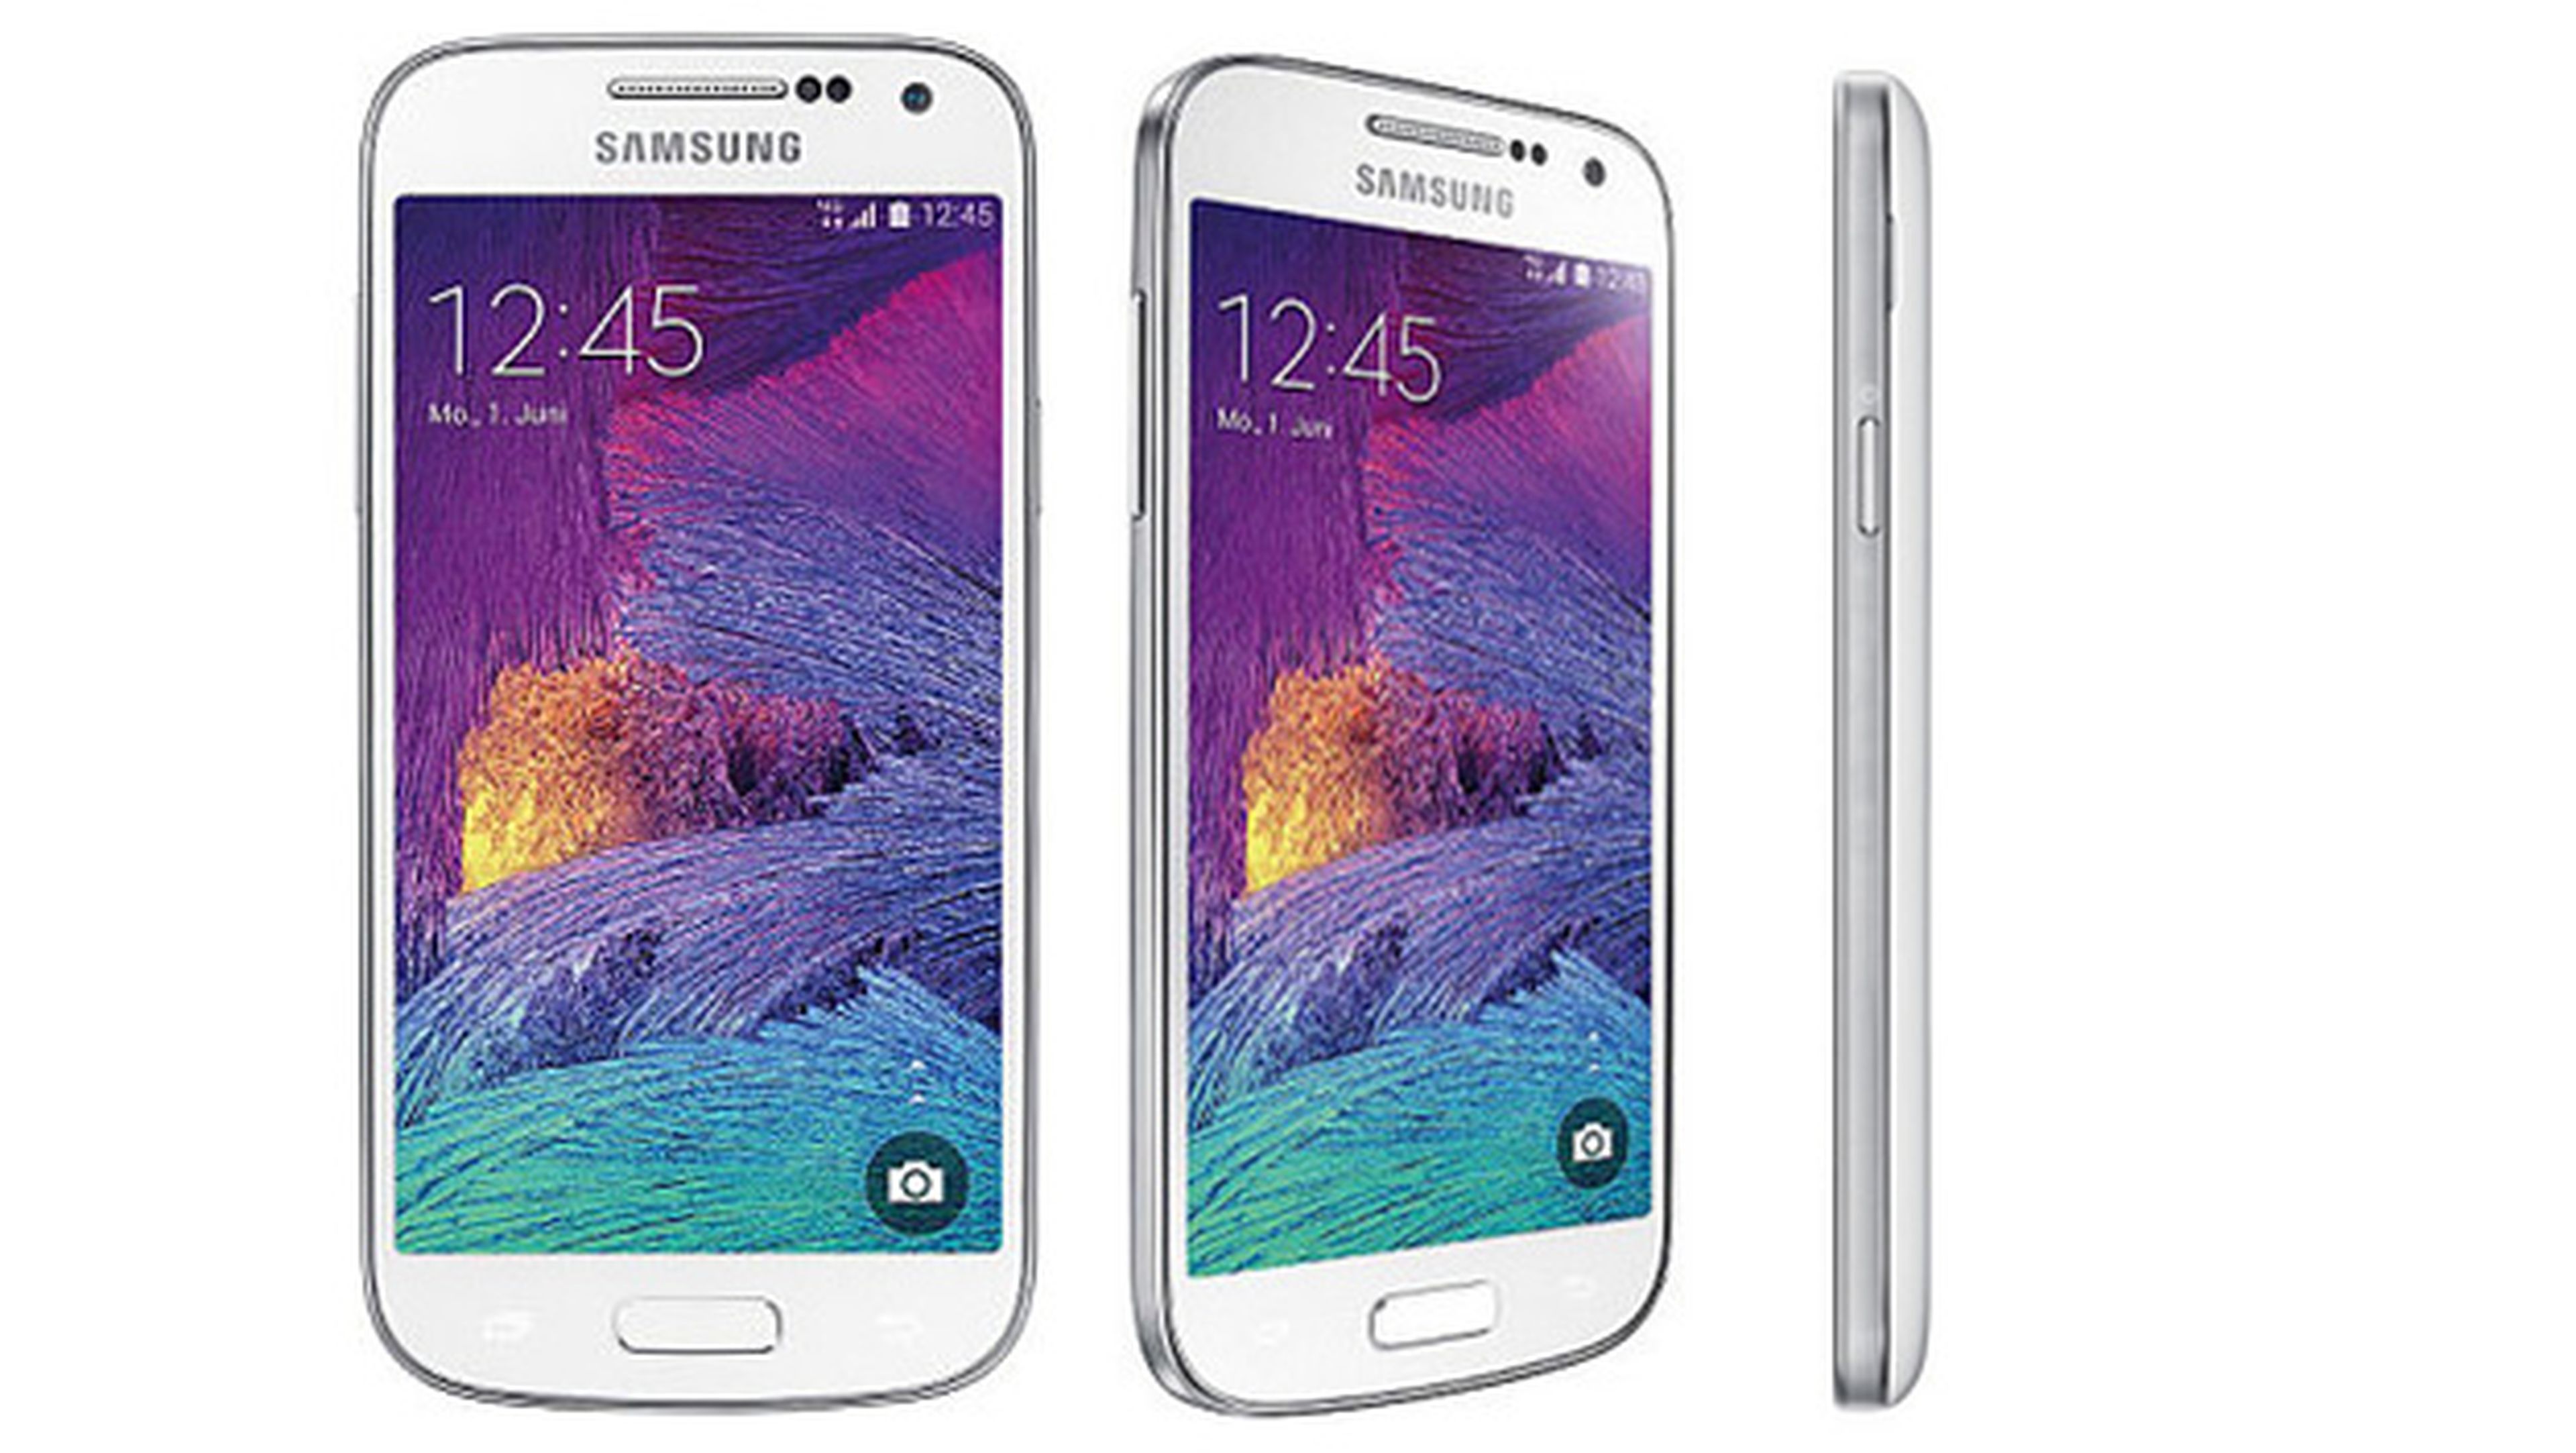 Samsung Galaxy S4 Mini Plus características precio